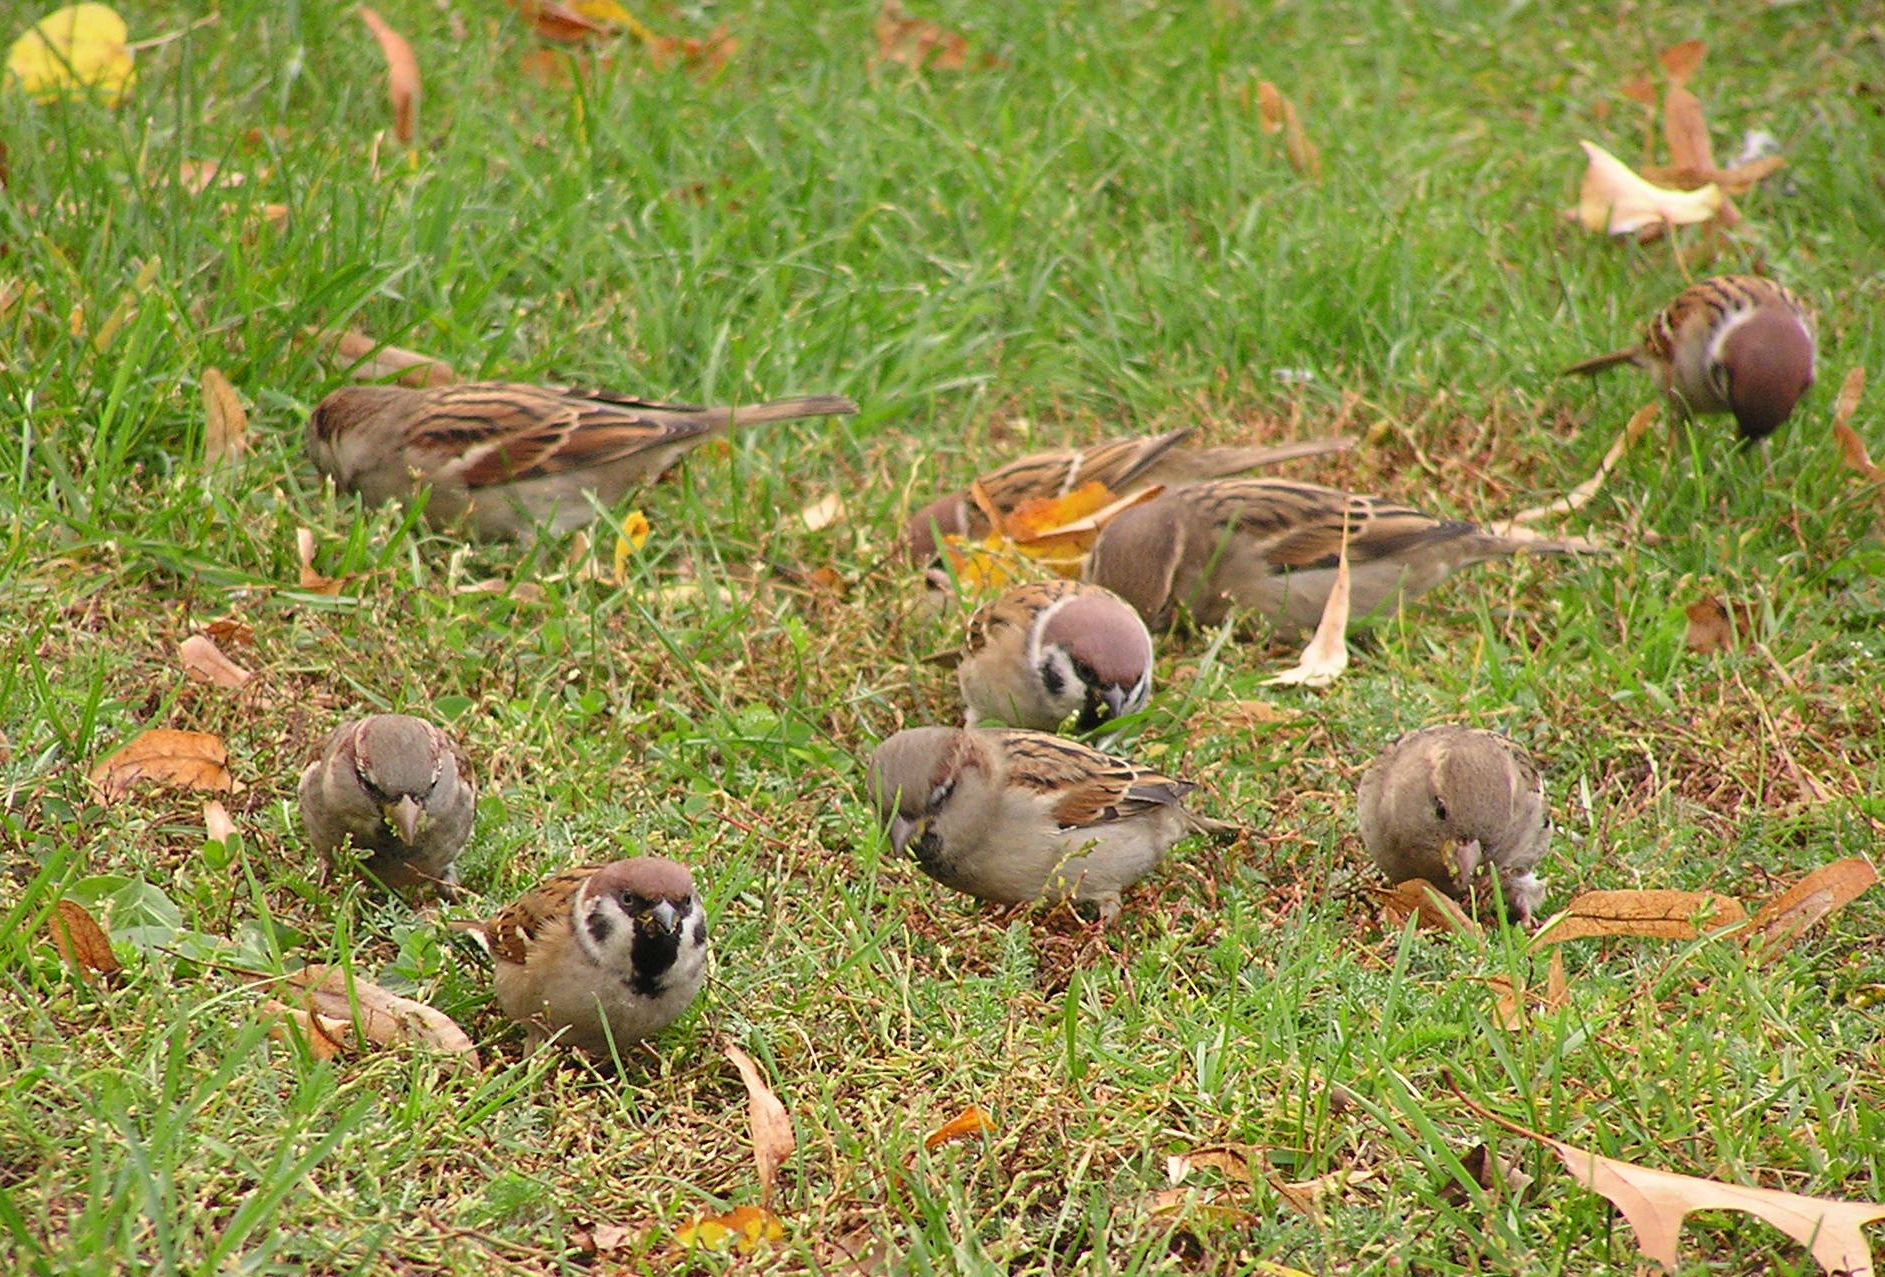 Sparrows preying on a communal lawn, photo by M. Radziszewski